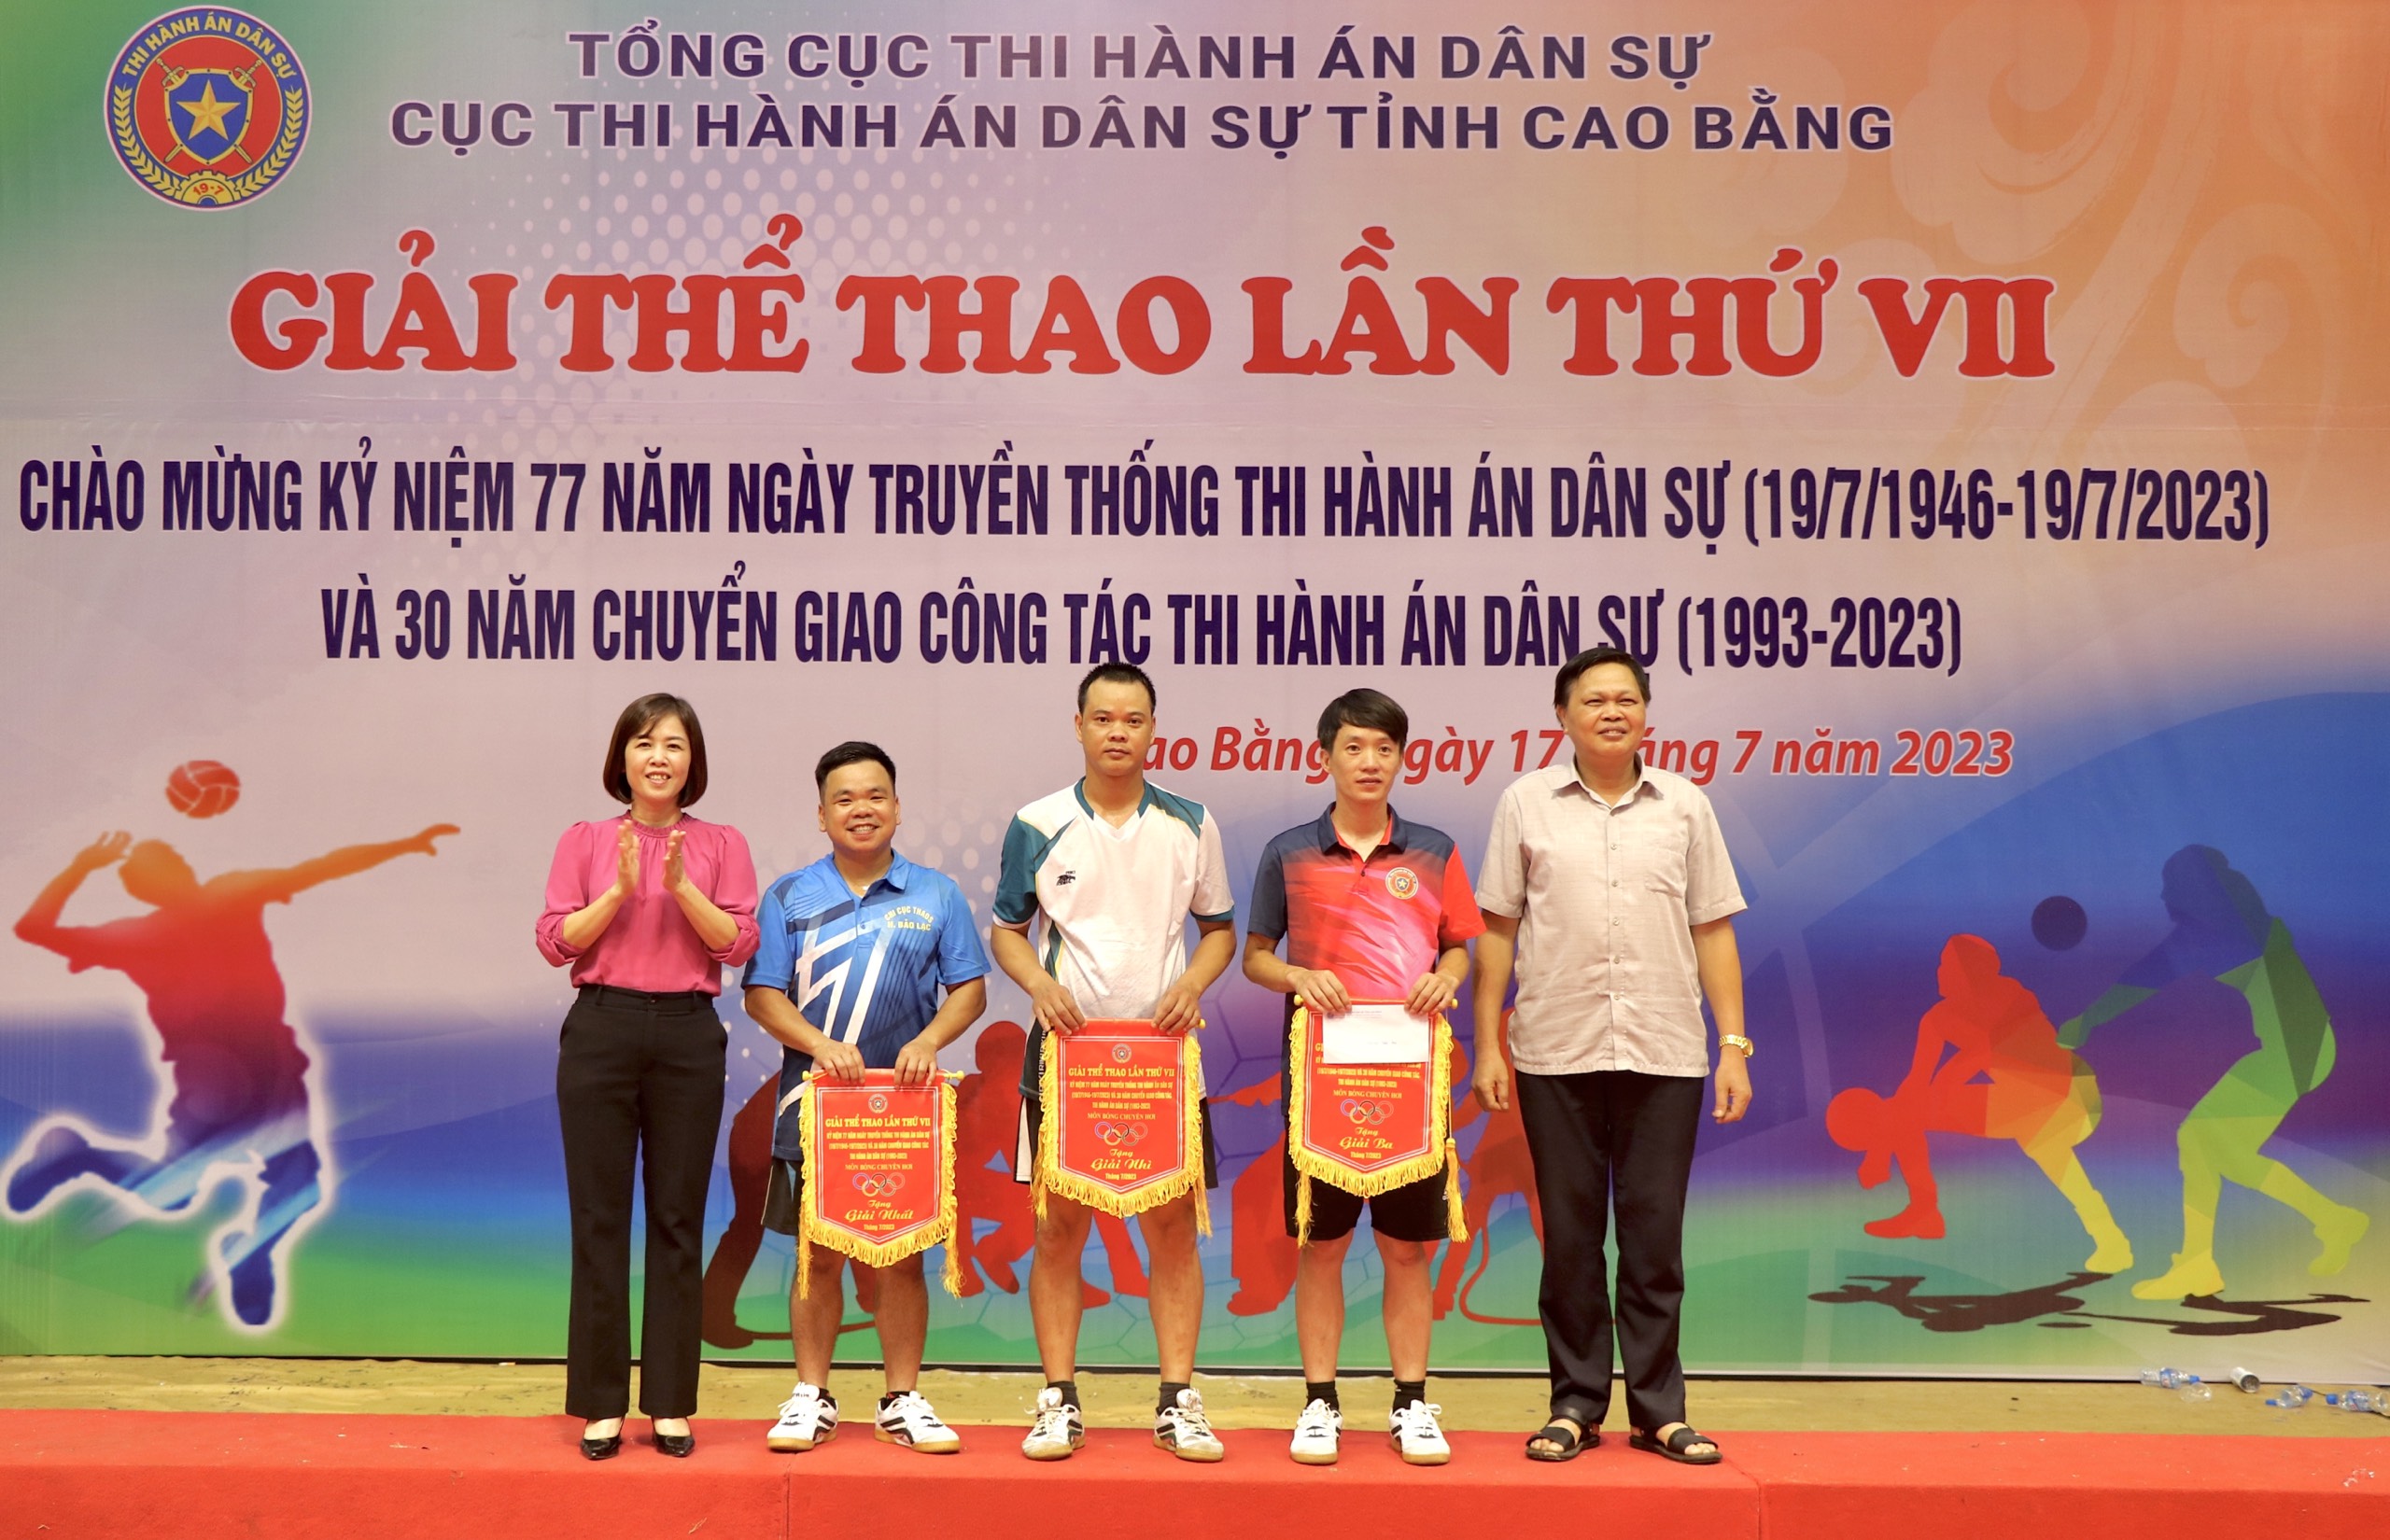 Cục Thi hành án dân sự tỉnh Cao Bằng tổ chức thành công Giải thi đấu thể thao lần thứ VII